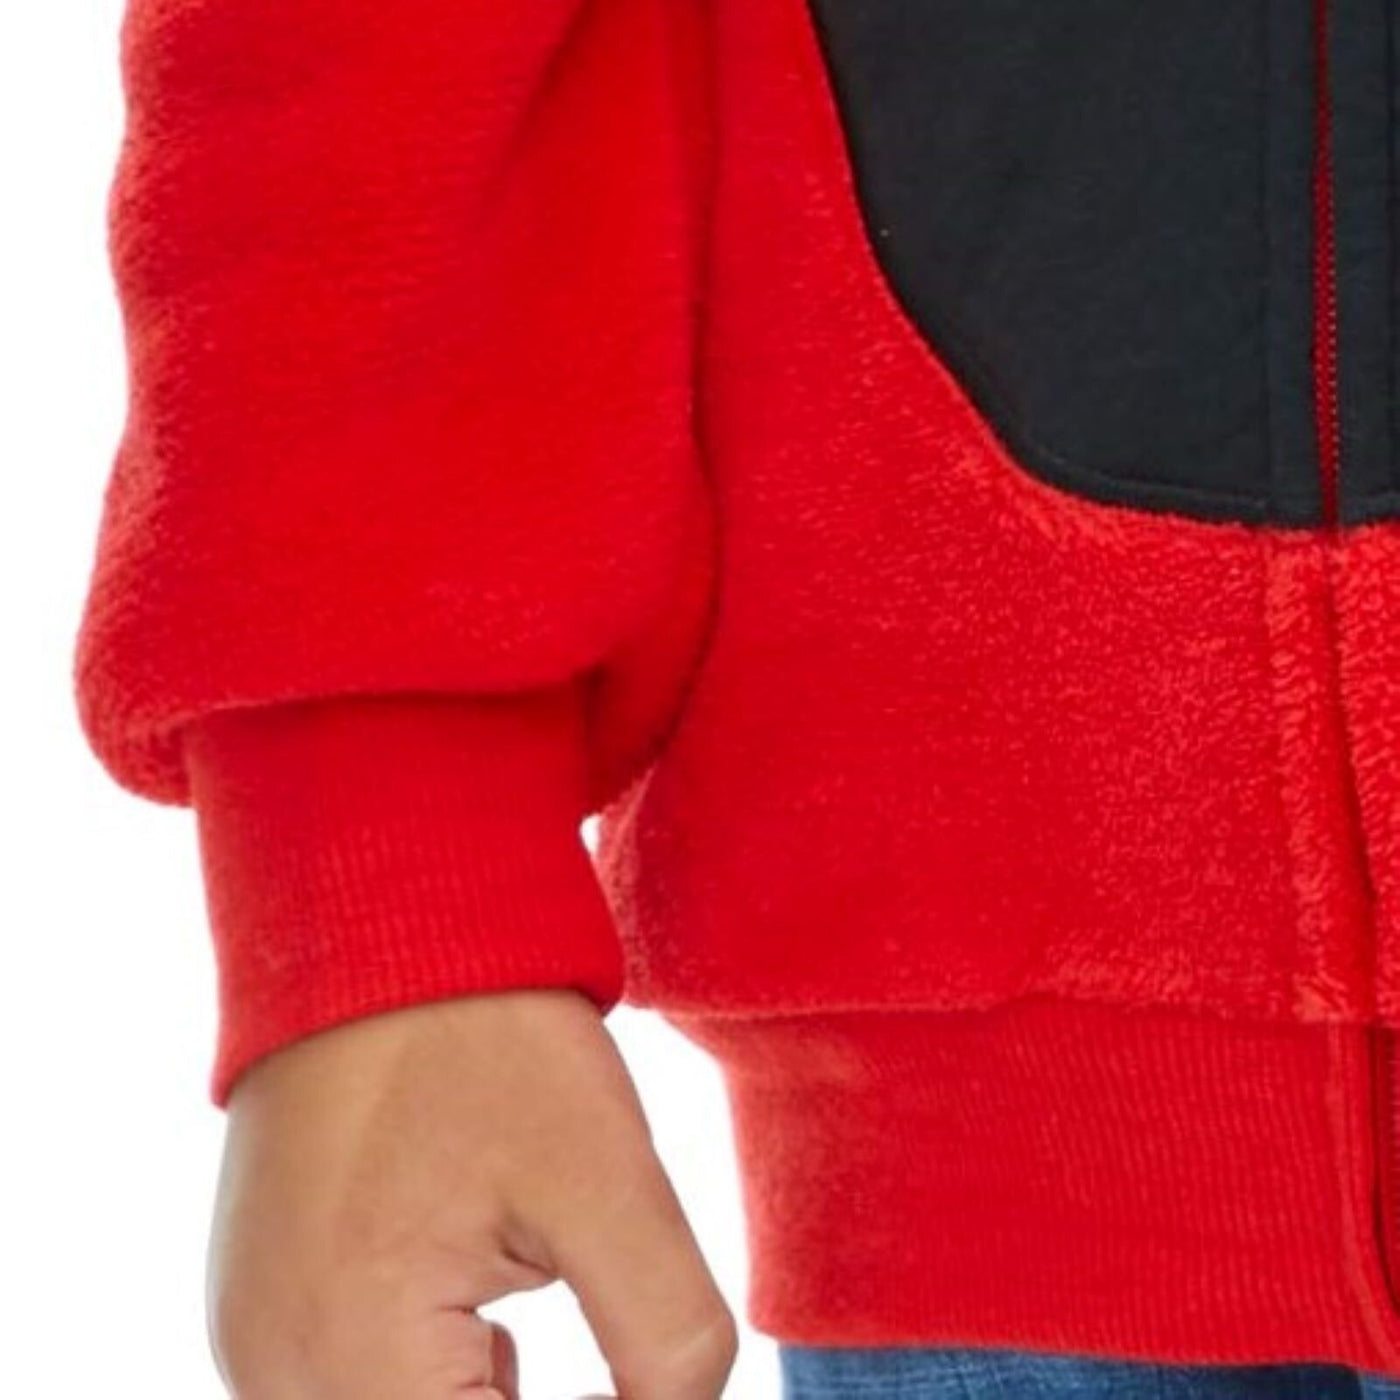 Woobie - Sudadera con capucha y cremallera para disfraz de Elmo de Barrio Sésamo